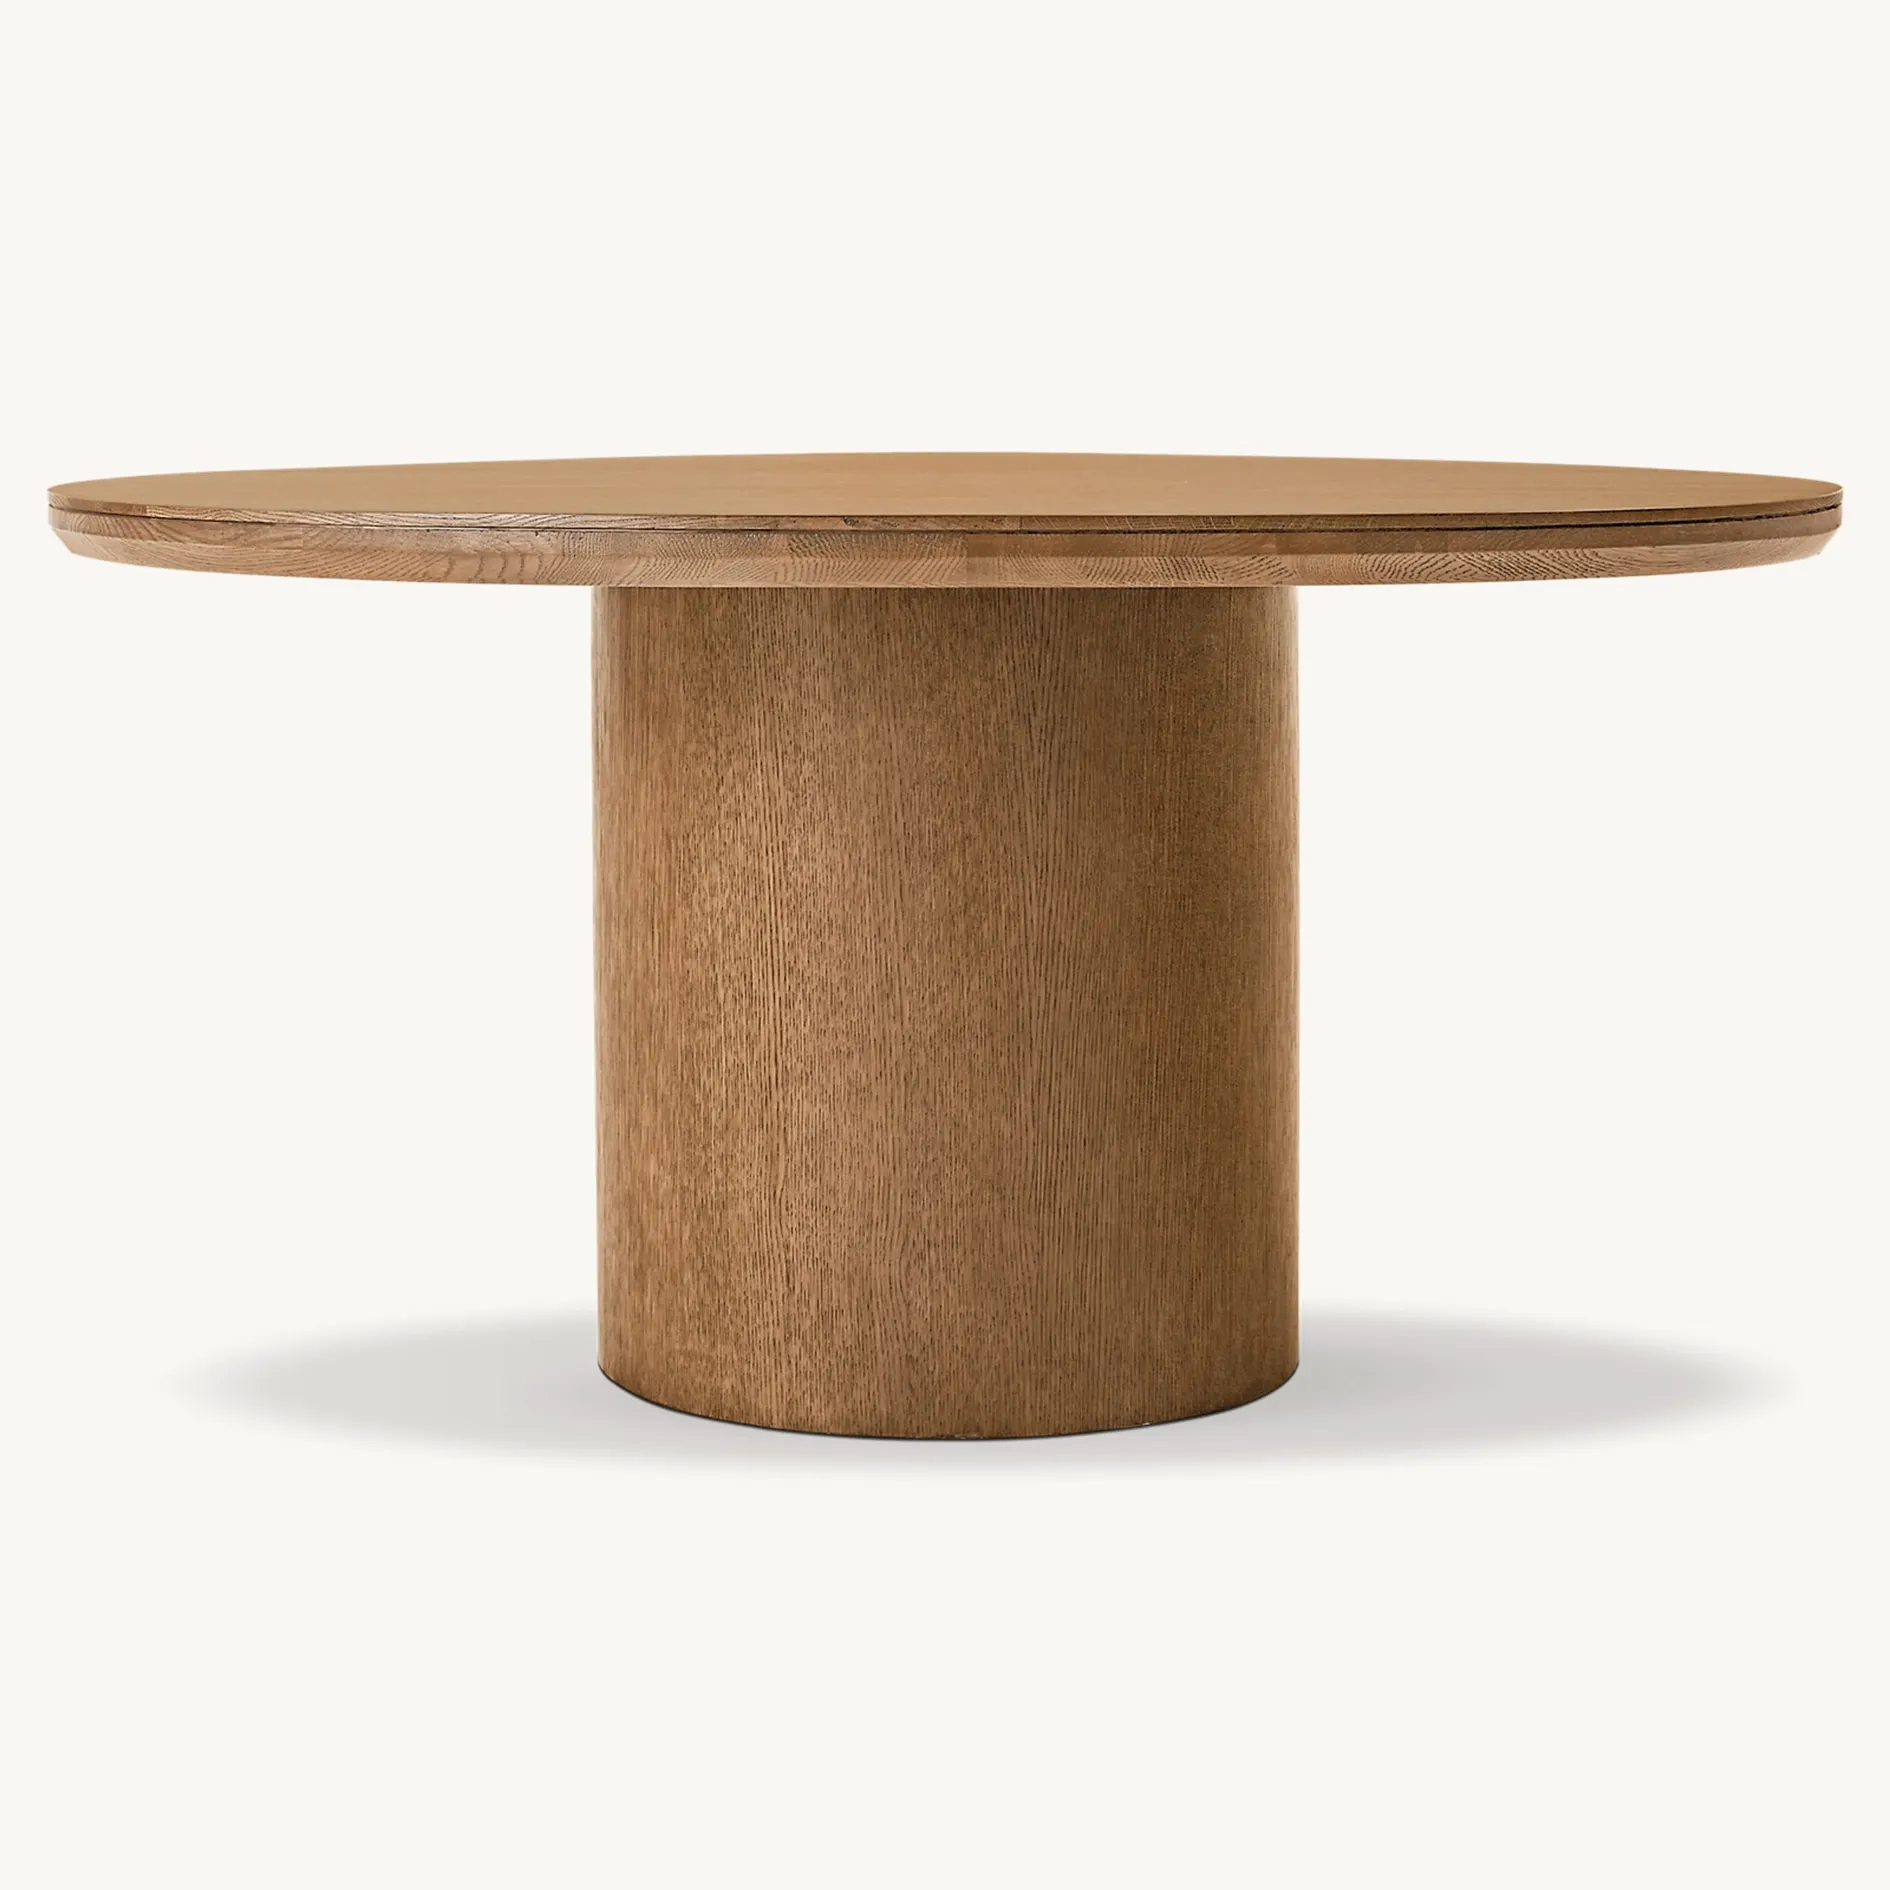 Conjunto de mesa de jantar redonda para 8 pessoas, mobília moderna nórdica e minimalista de madeira